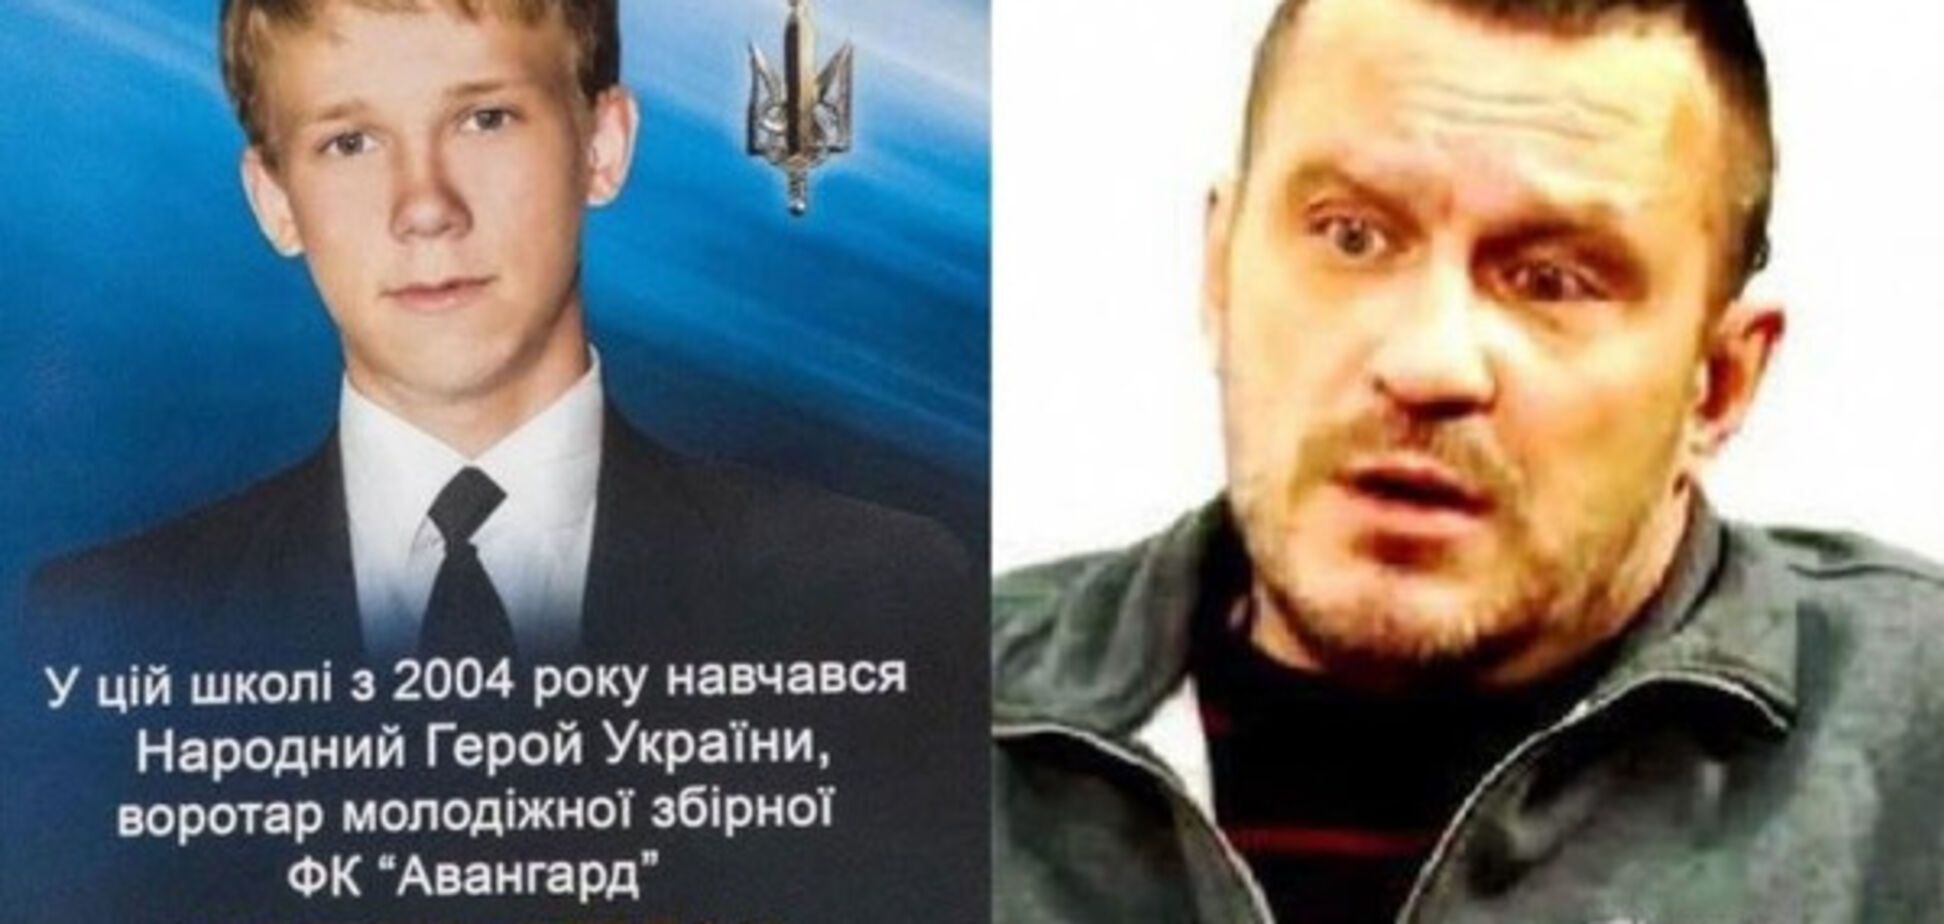 Вбивство 16-річного на Донбасі